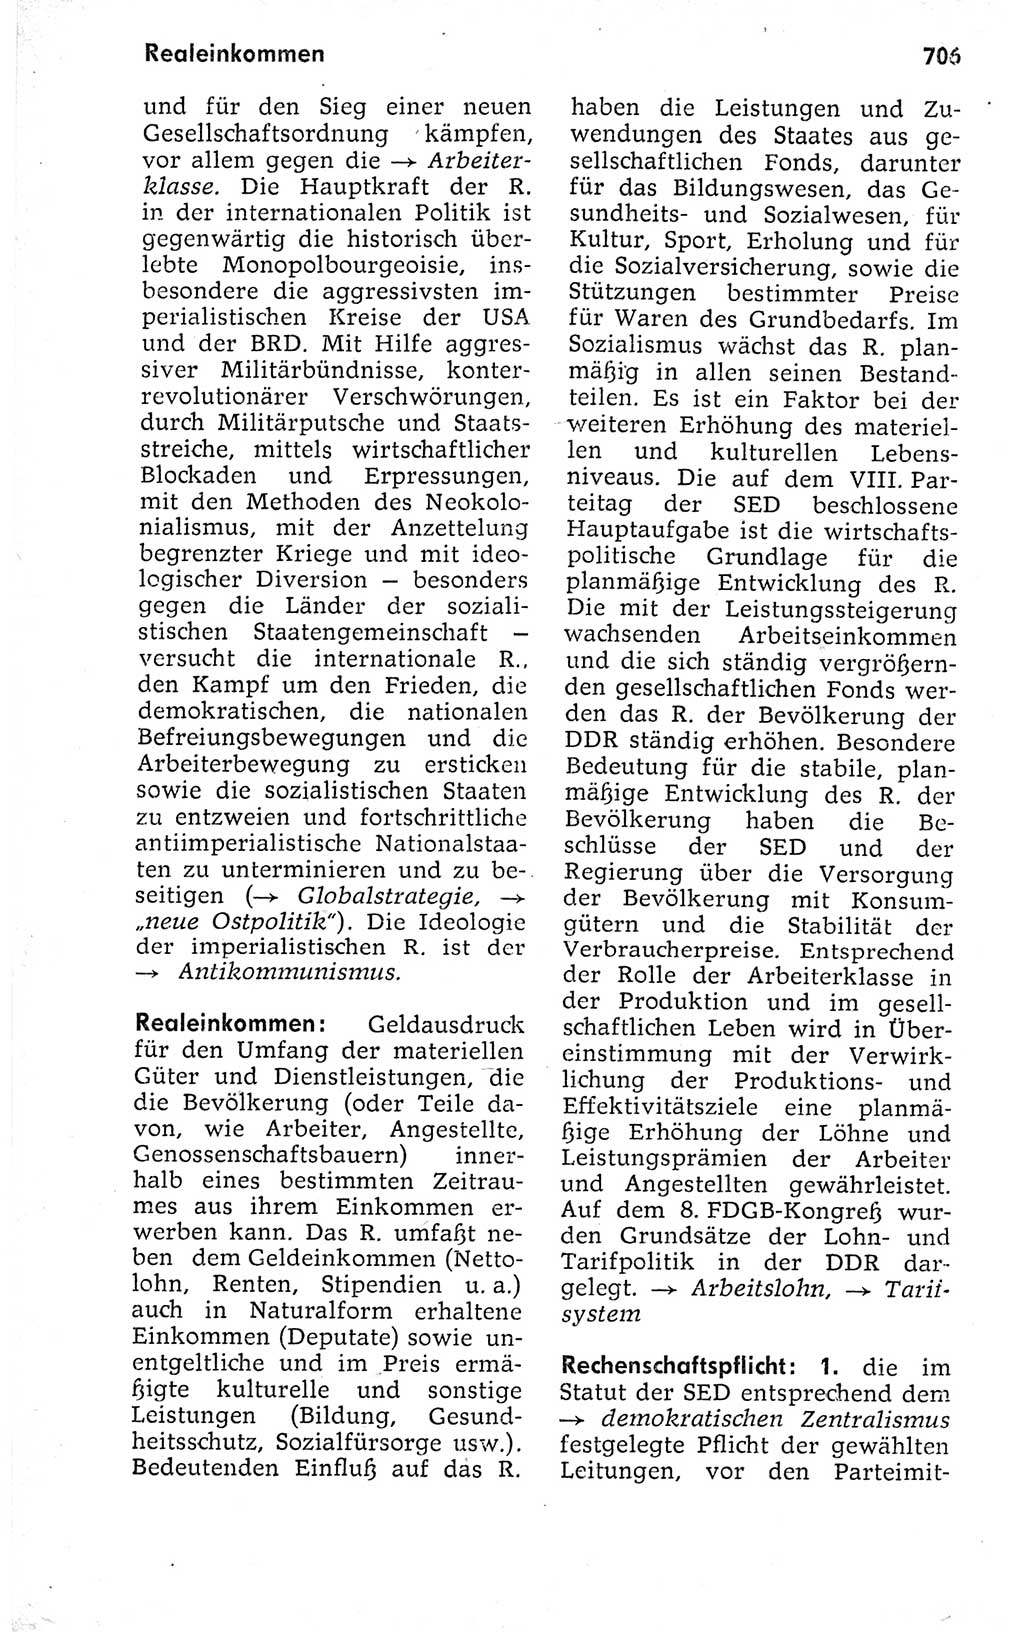 Kleines politisches Wörterbuch [Deutsche Demokratische Republik (DDR)] 1973, Seite 706 (Kl. pol. Wb. DDR 1973, S. 706)